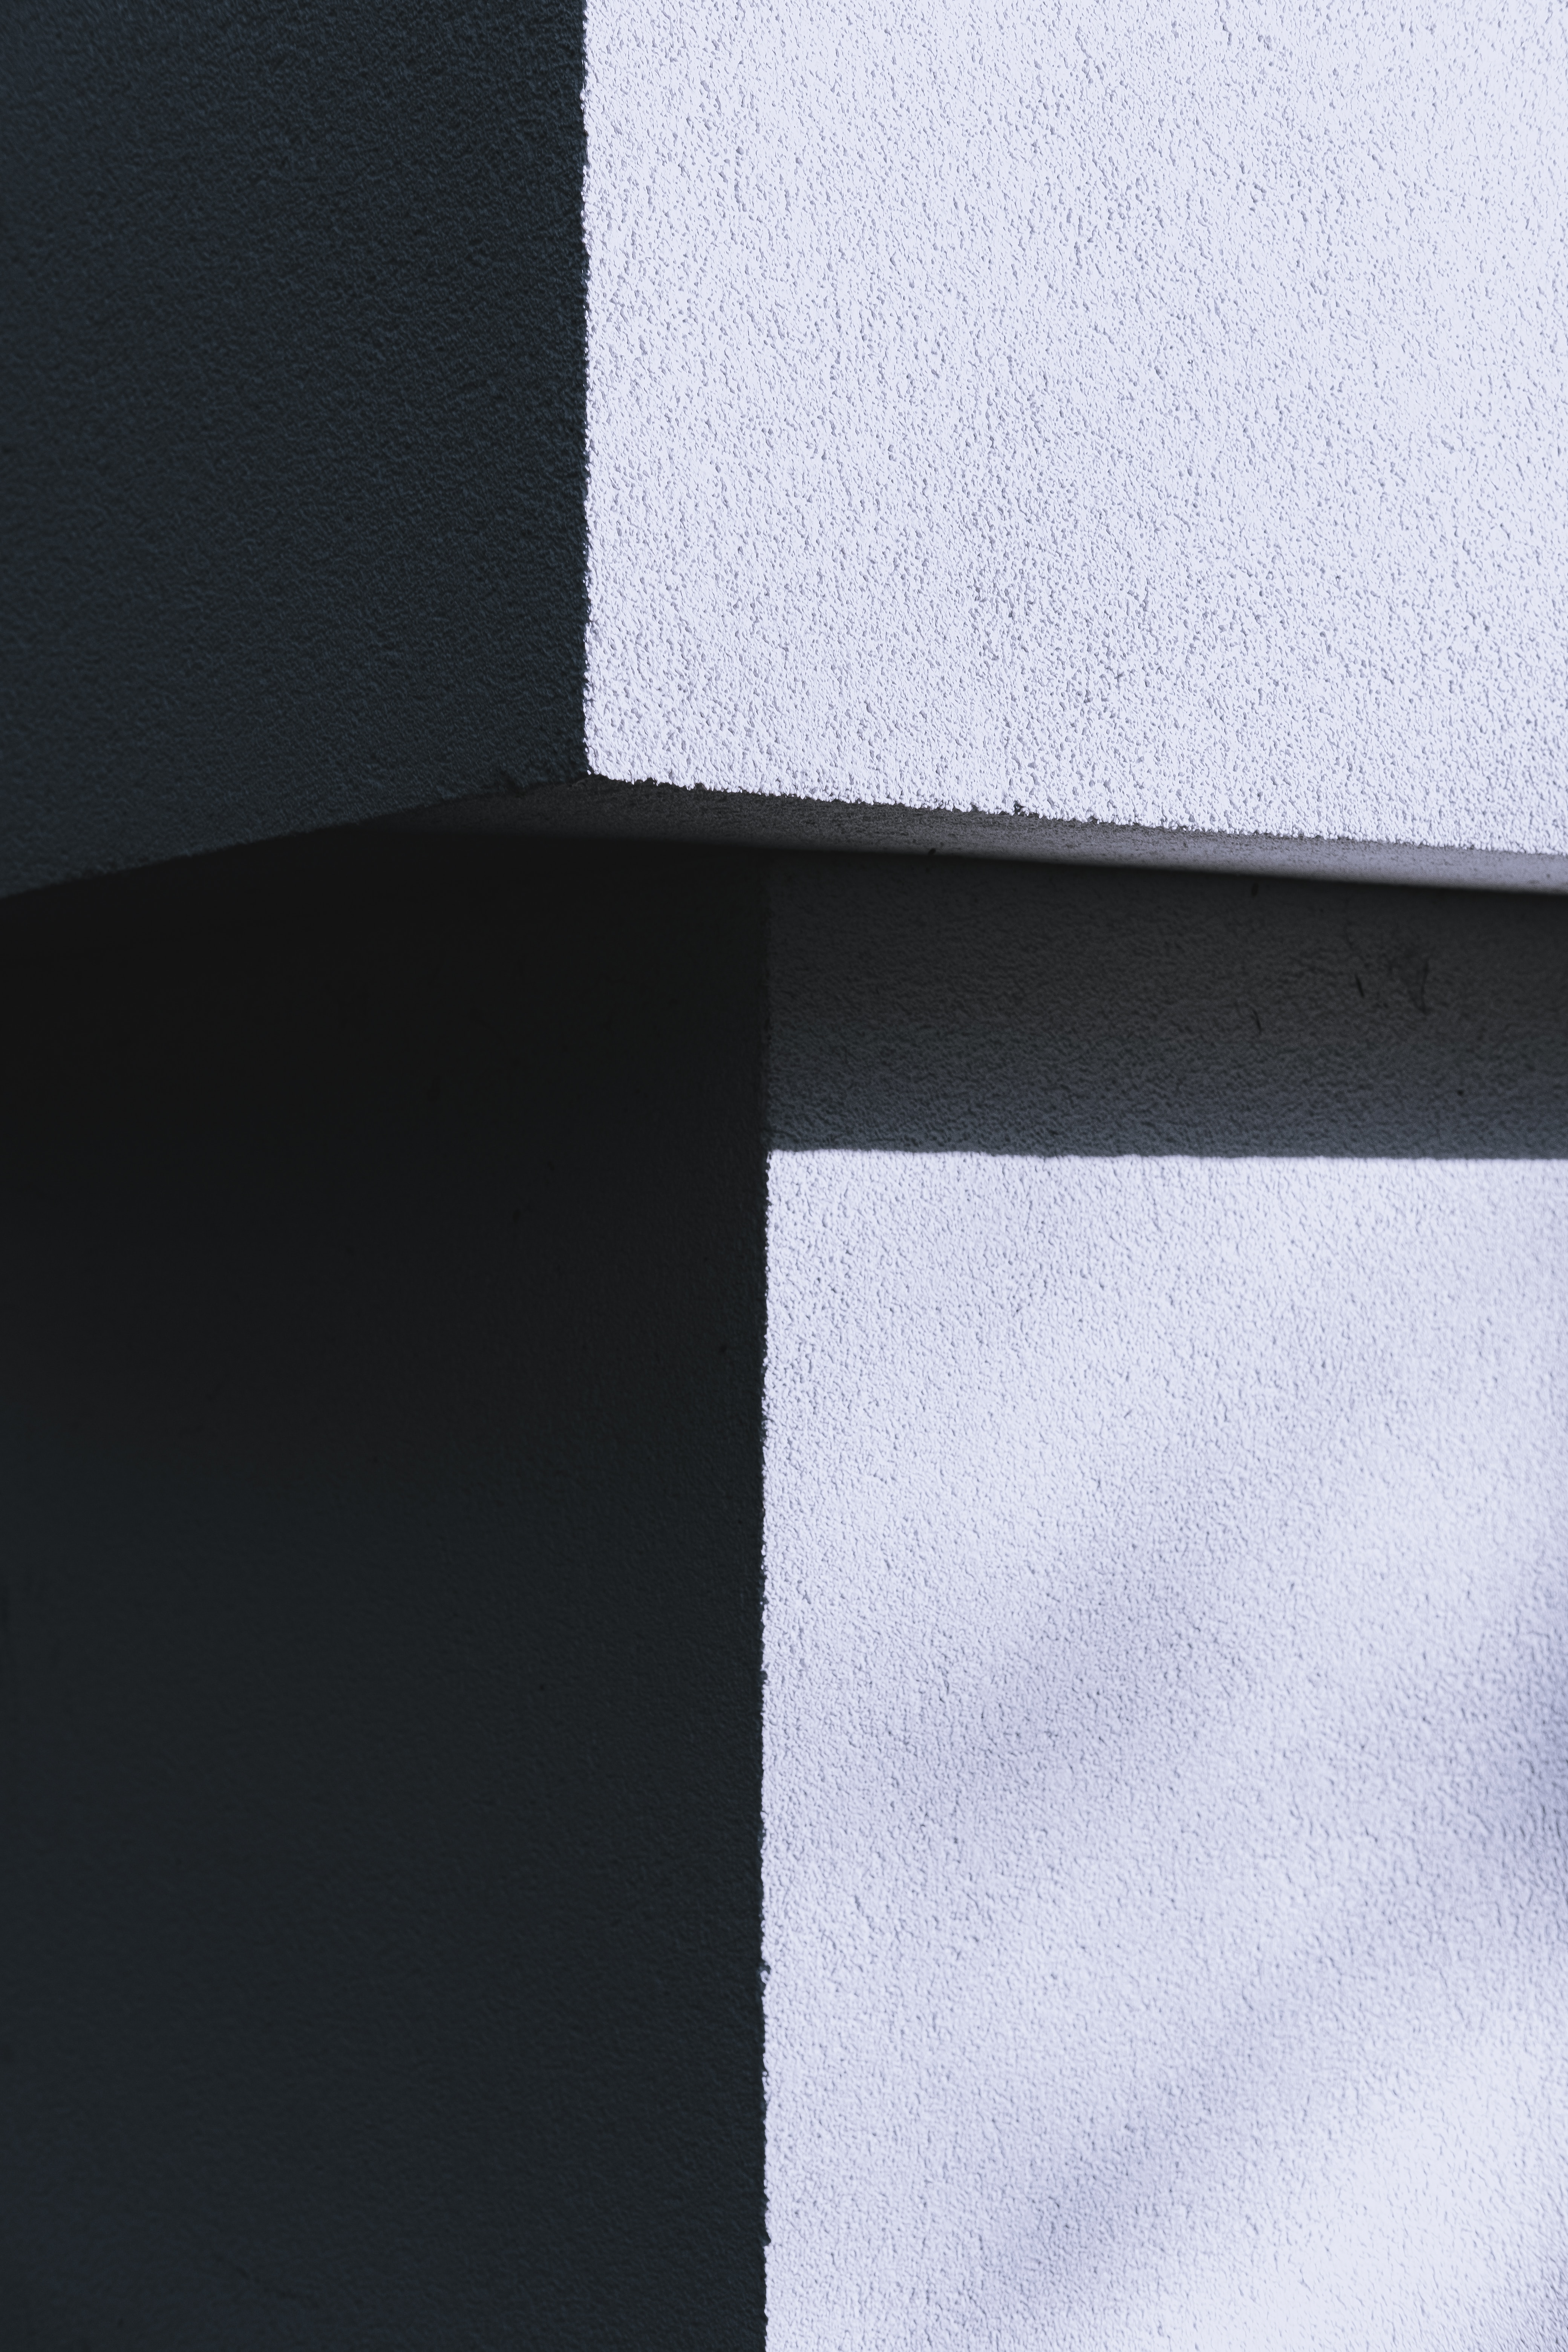 miscellaneous, concrete, miscellanea, texture, wall, grey, shadows